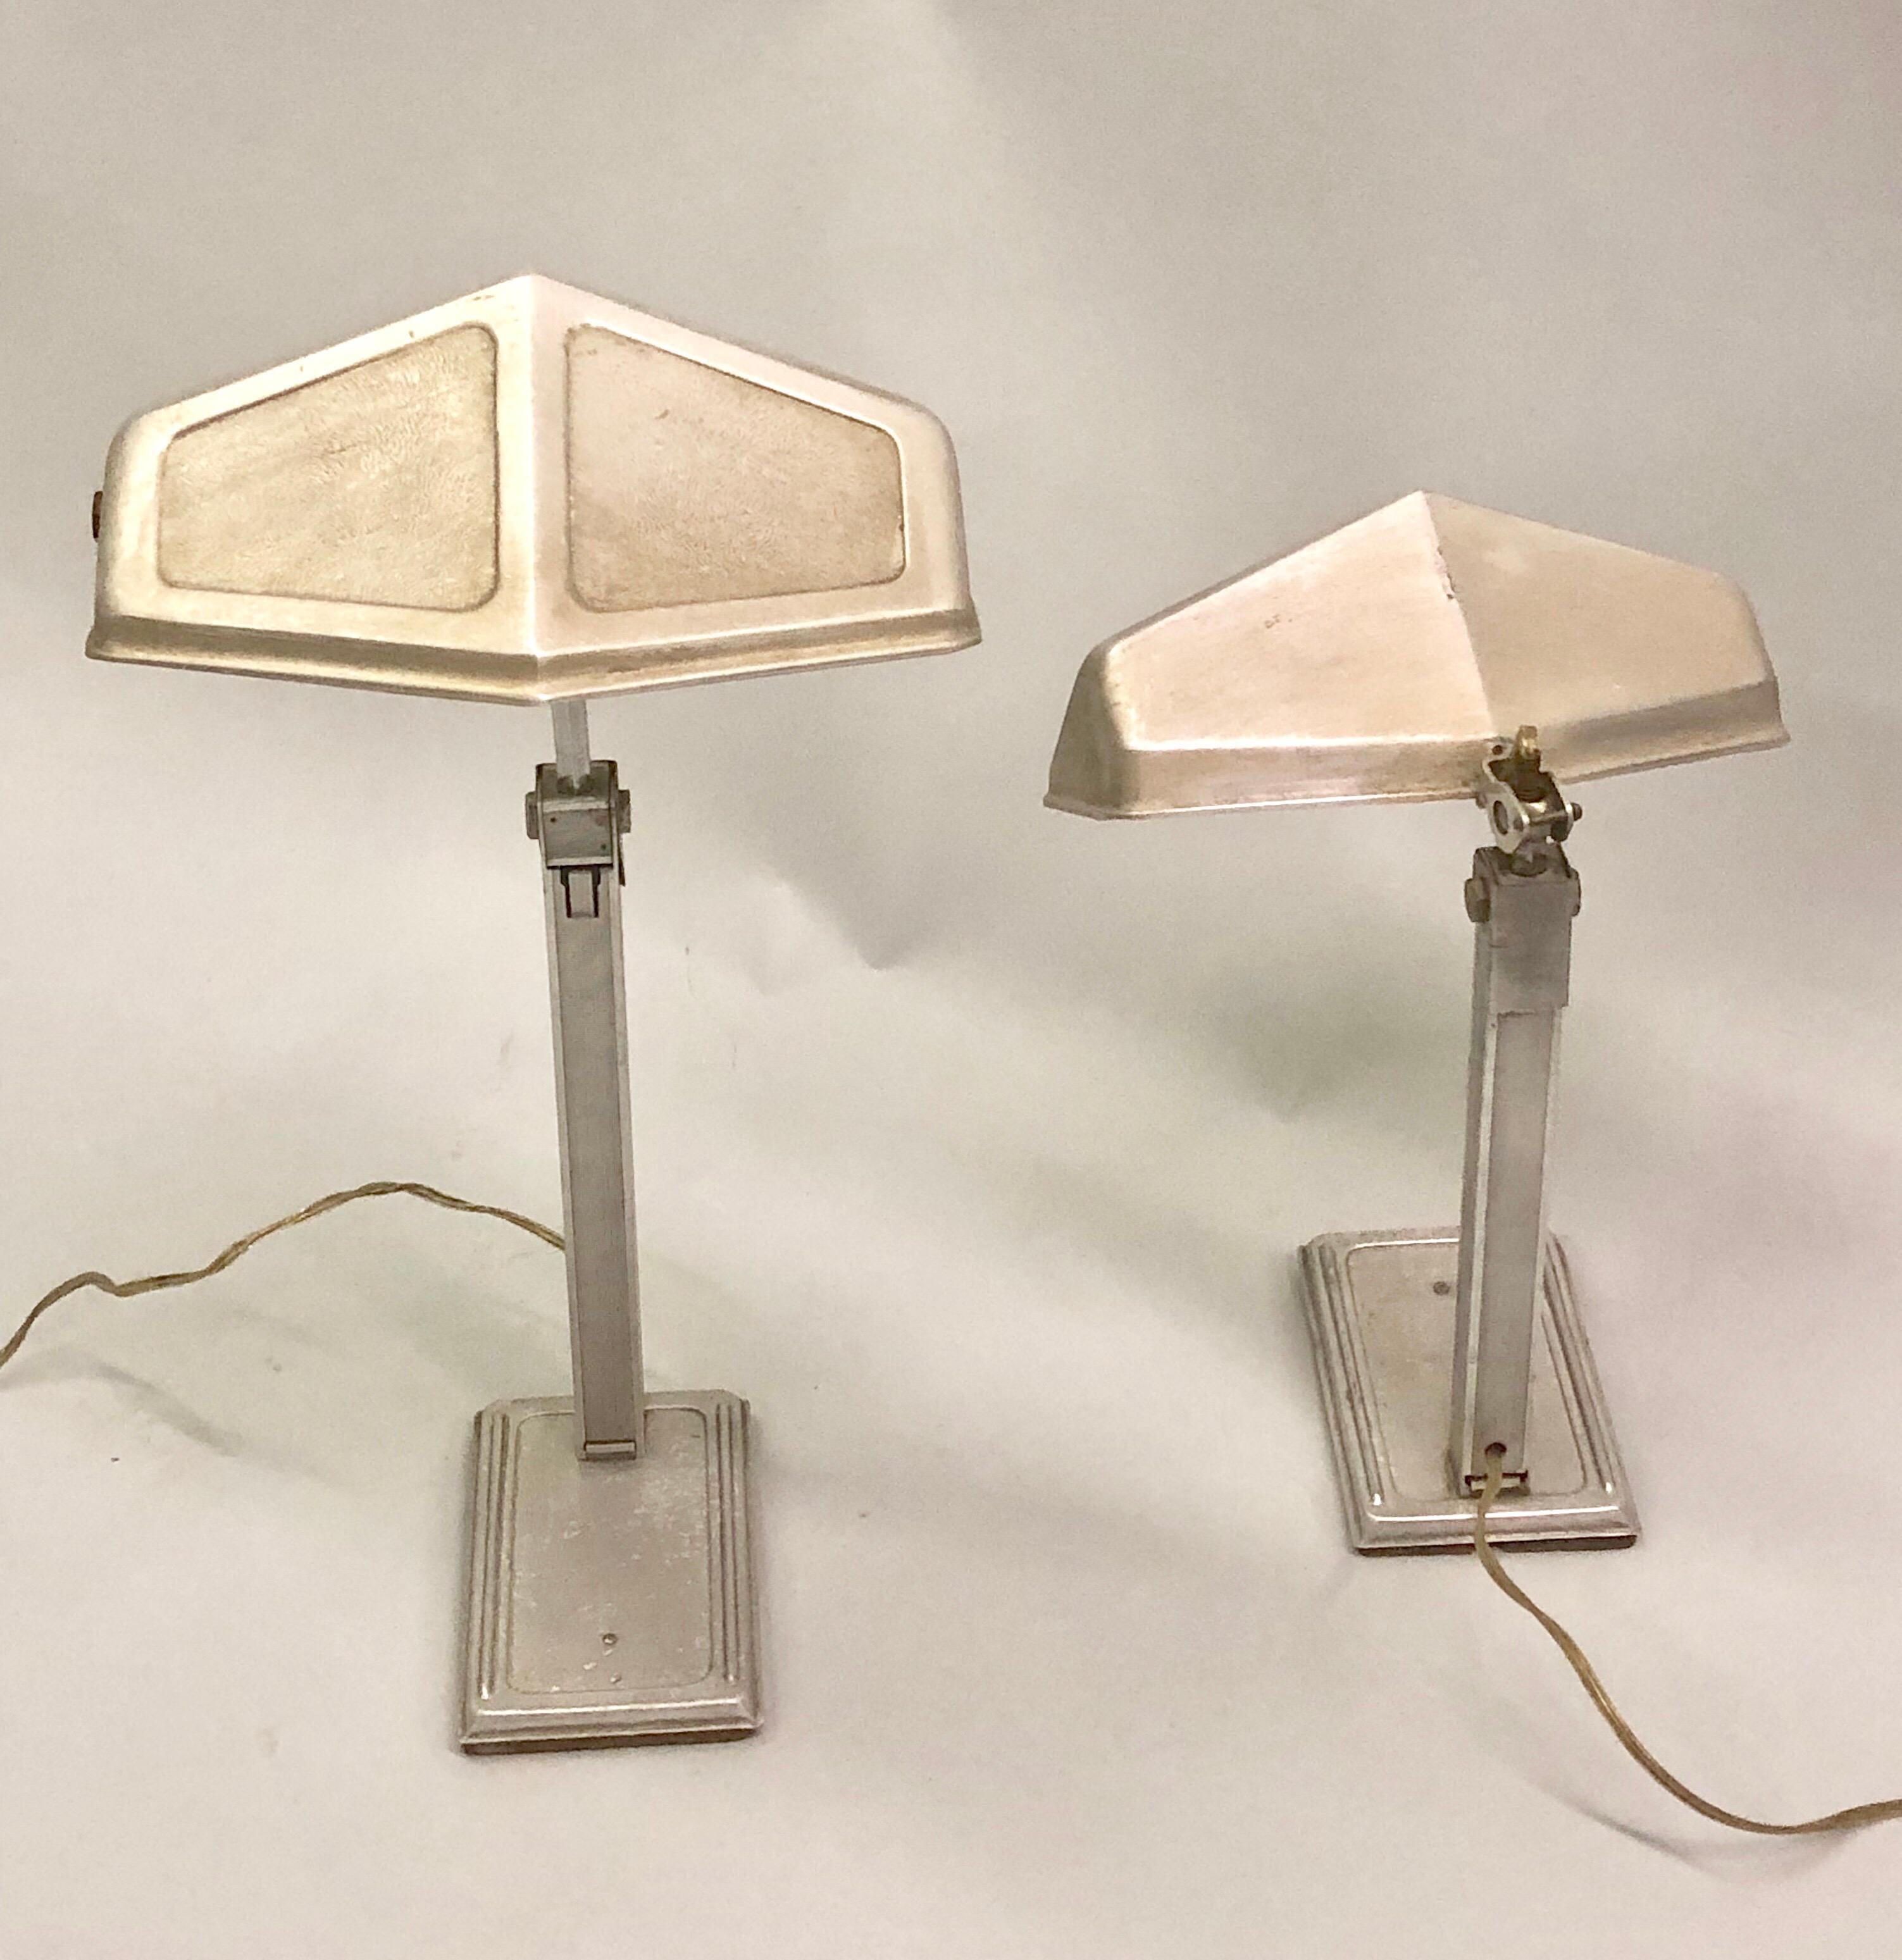 Deux lampes de bureau ou de table françaises du début de la période moderne en aluminium avec diffuseurs mobiles et réglables par Pirette. 

Les pièces montrent l'influence du design moderne, industriel et de l'art déco français. Les diffuseurs